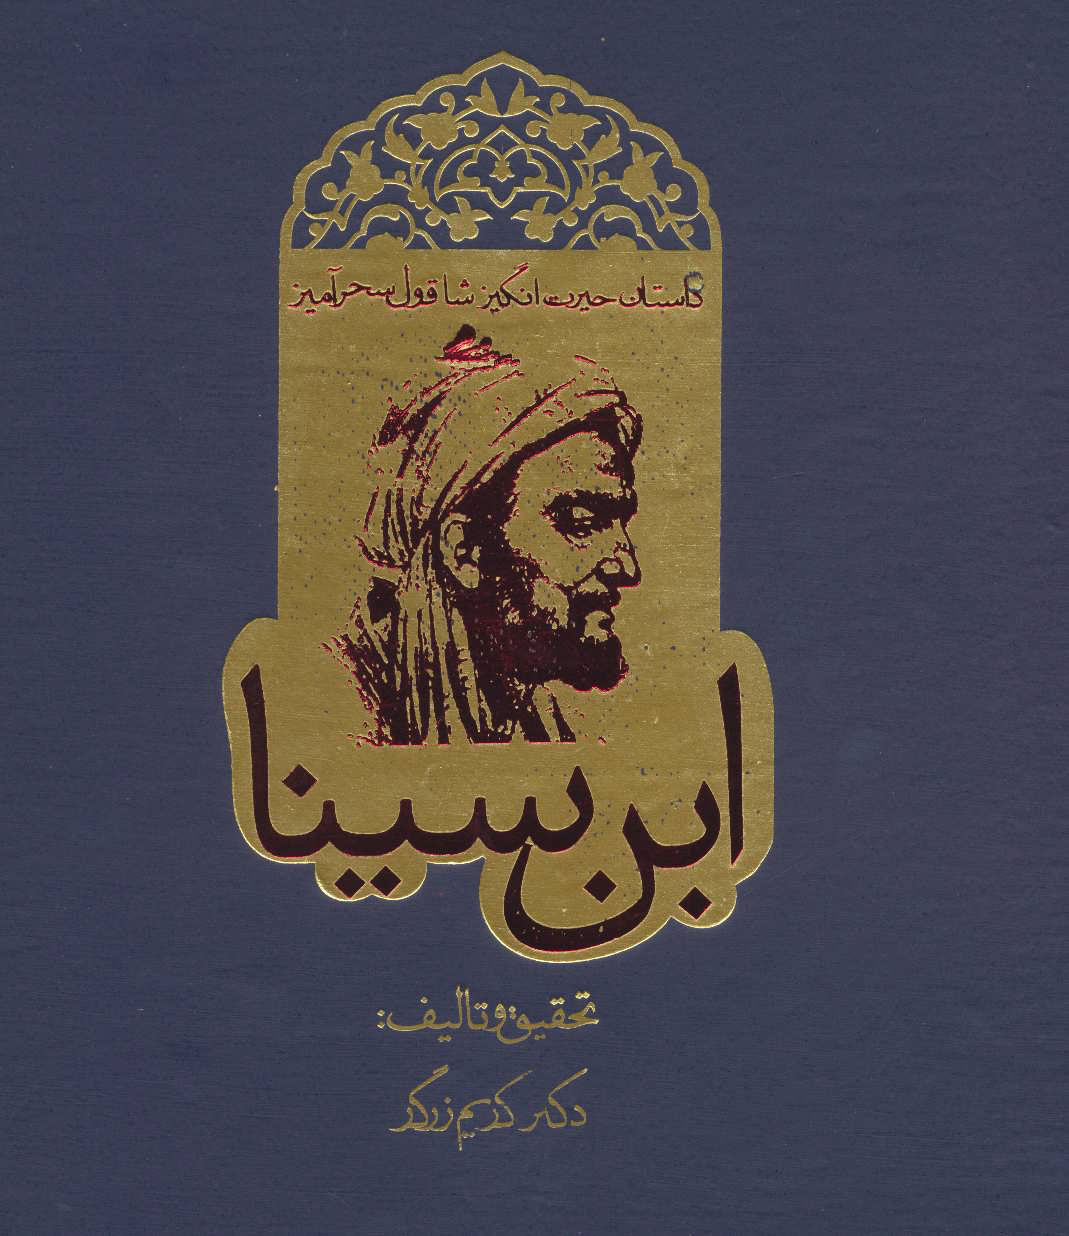 دانلود کتاب افسانه شاقول سحرآمیز ابو علی سینا